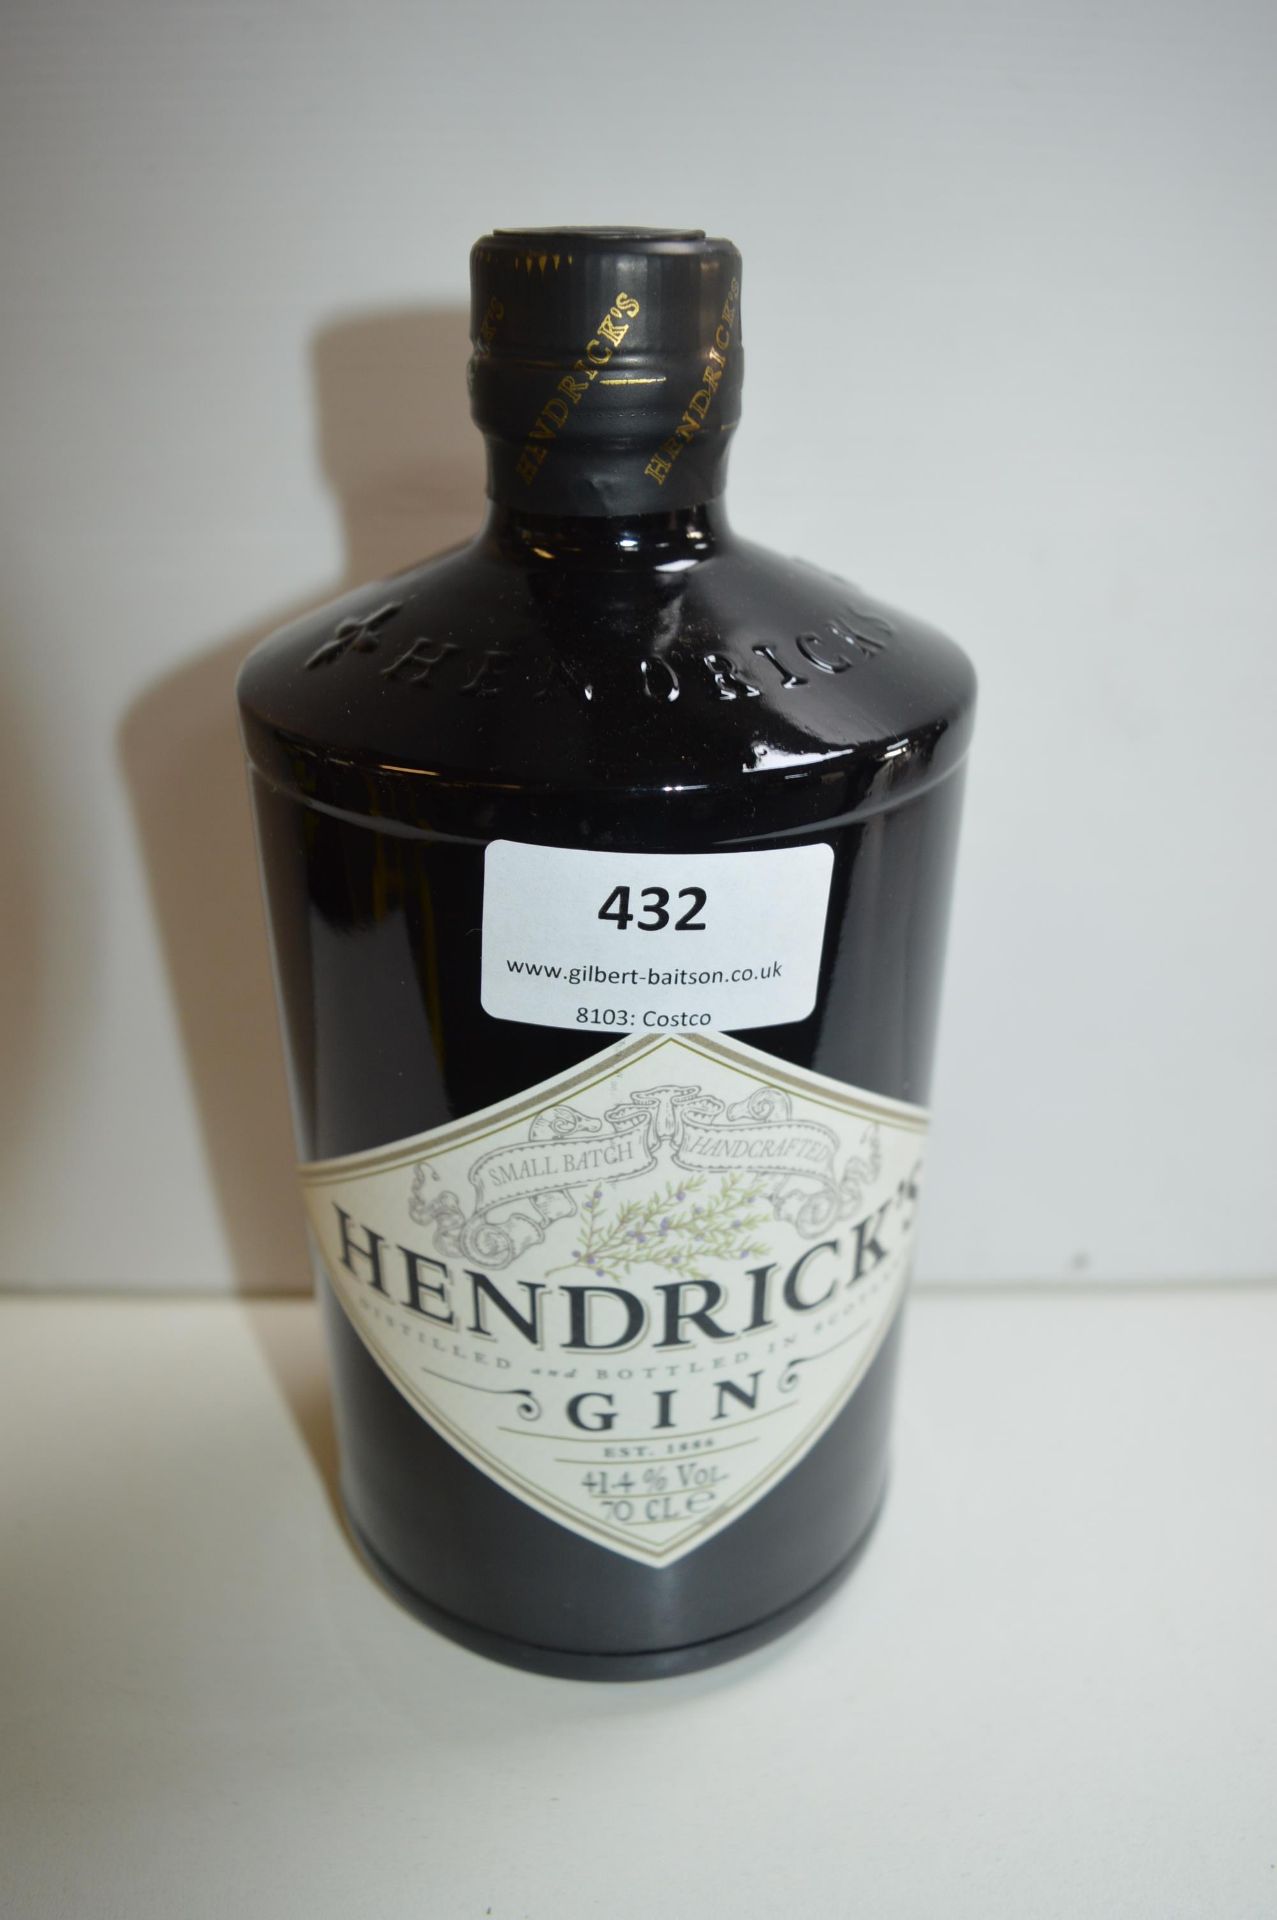 Bottle of Hendricks Gin